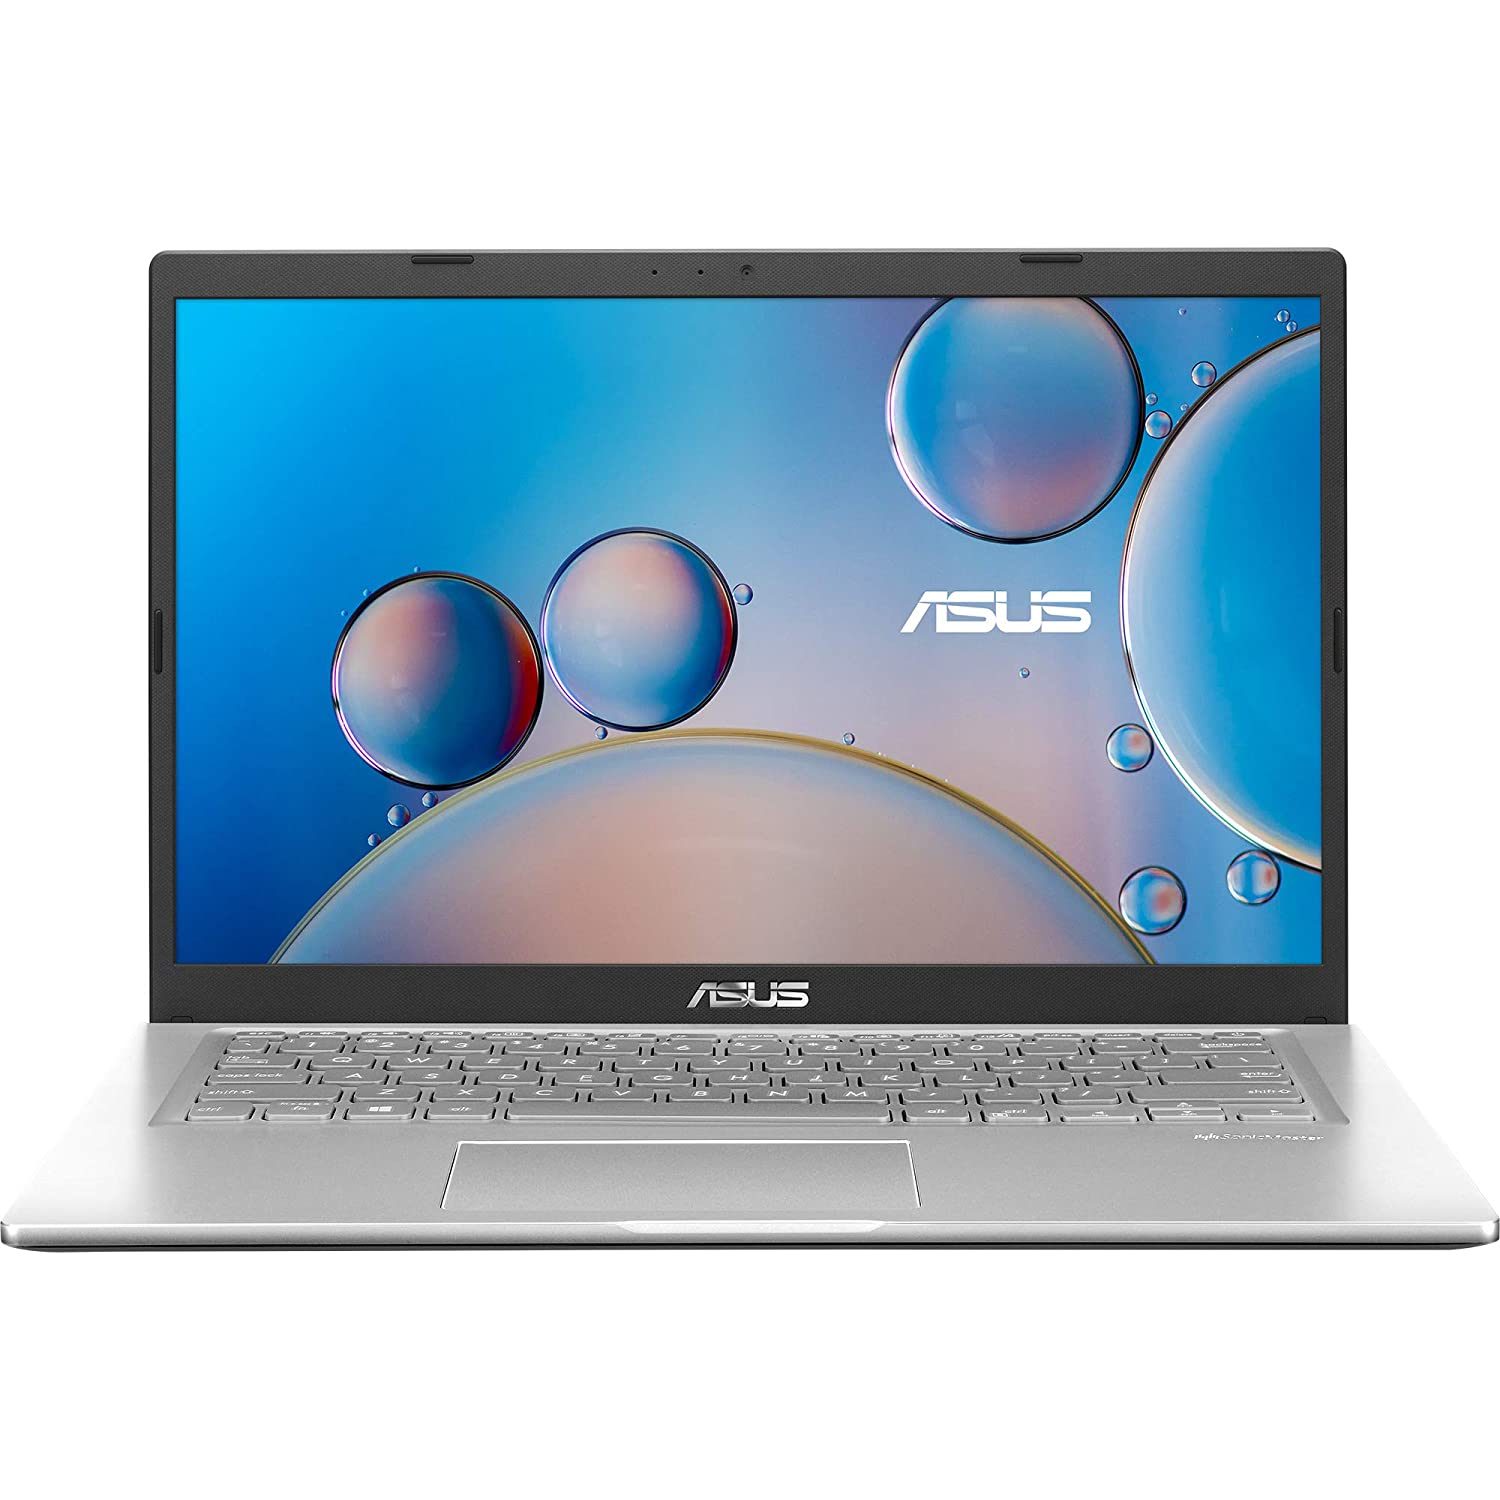 ASUS VivoBook 14 (2021) X415EA-EK342TS